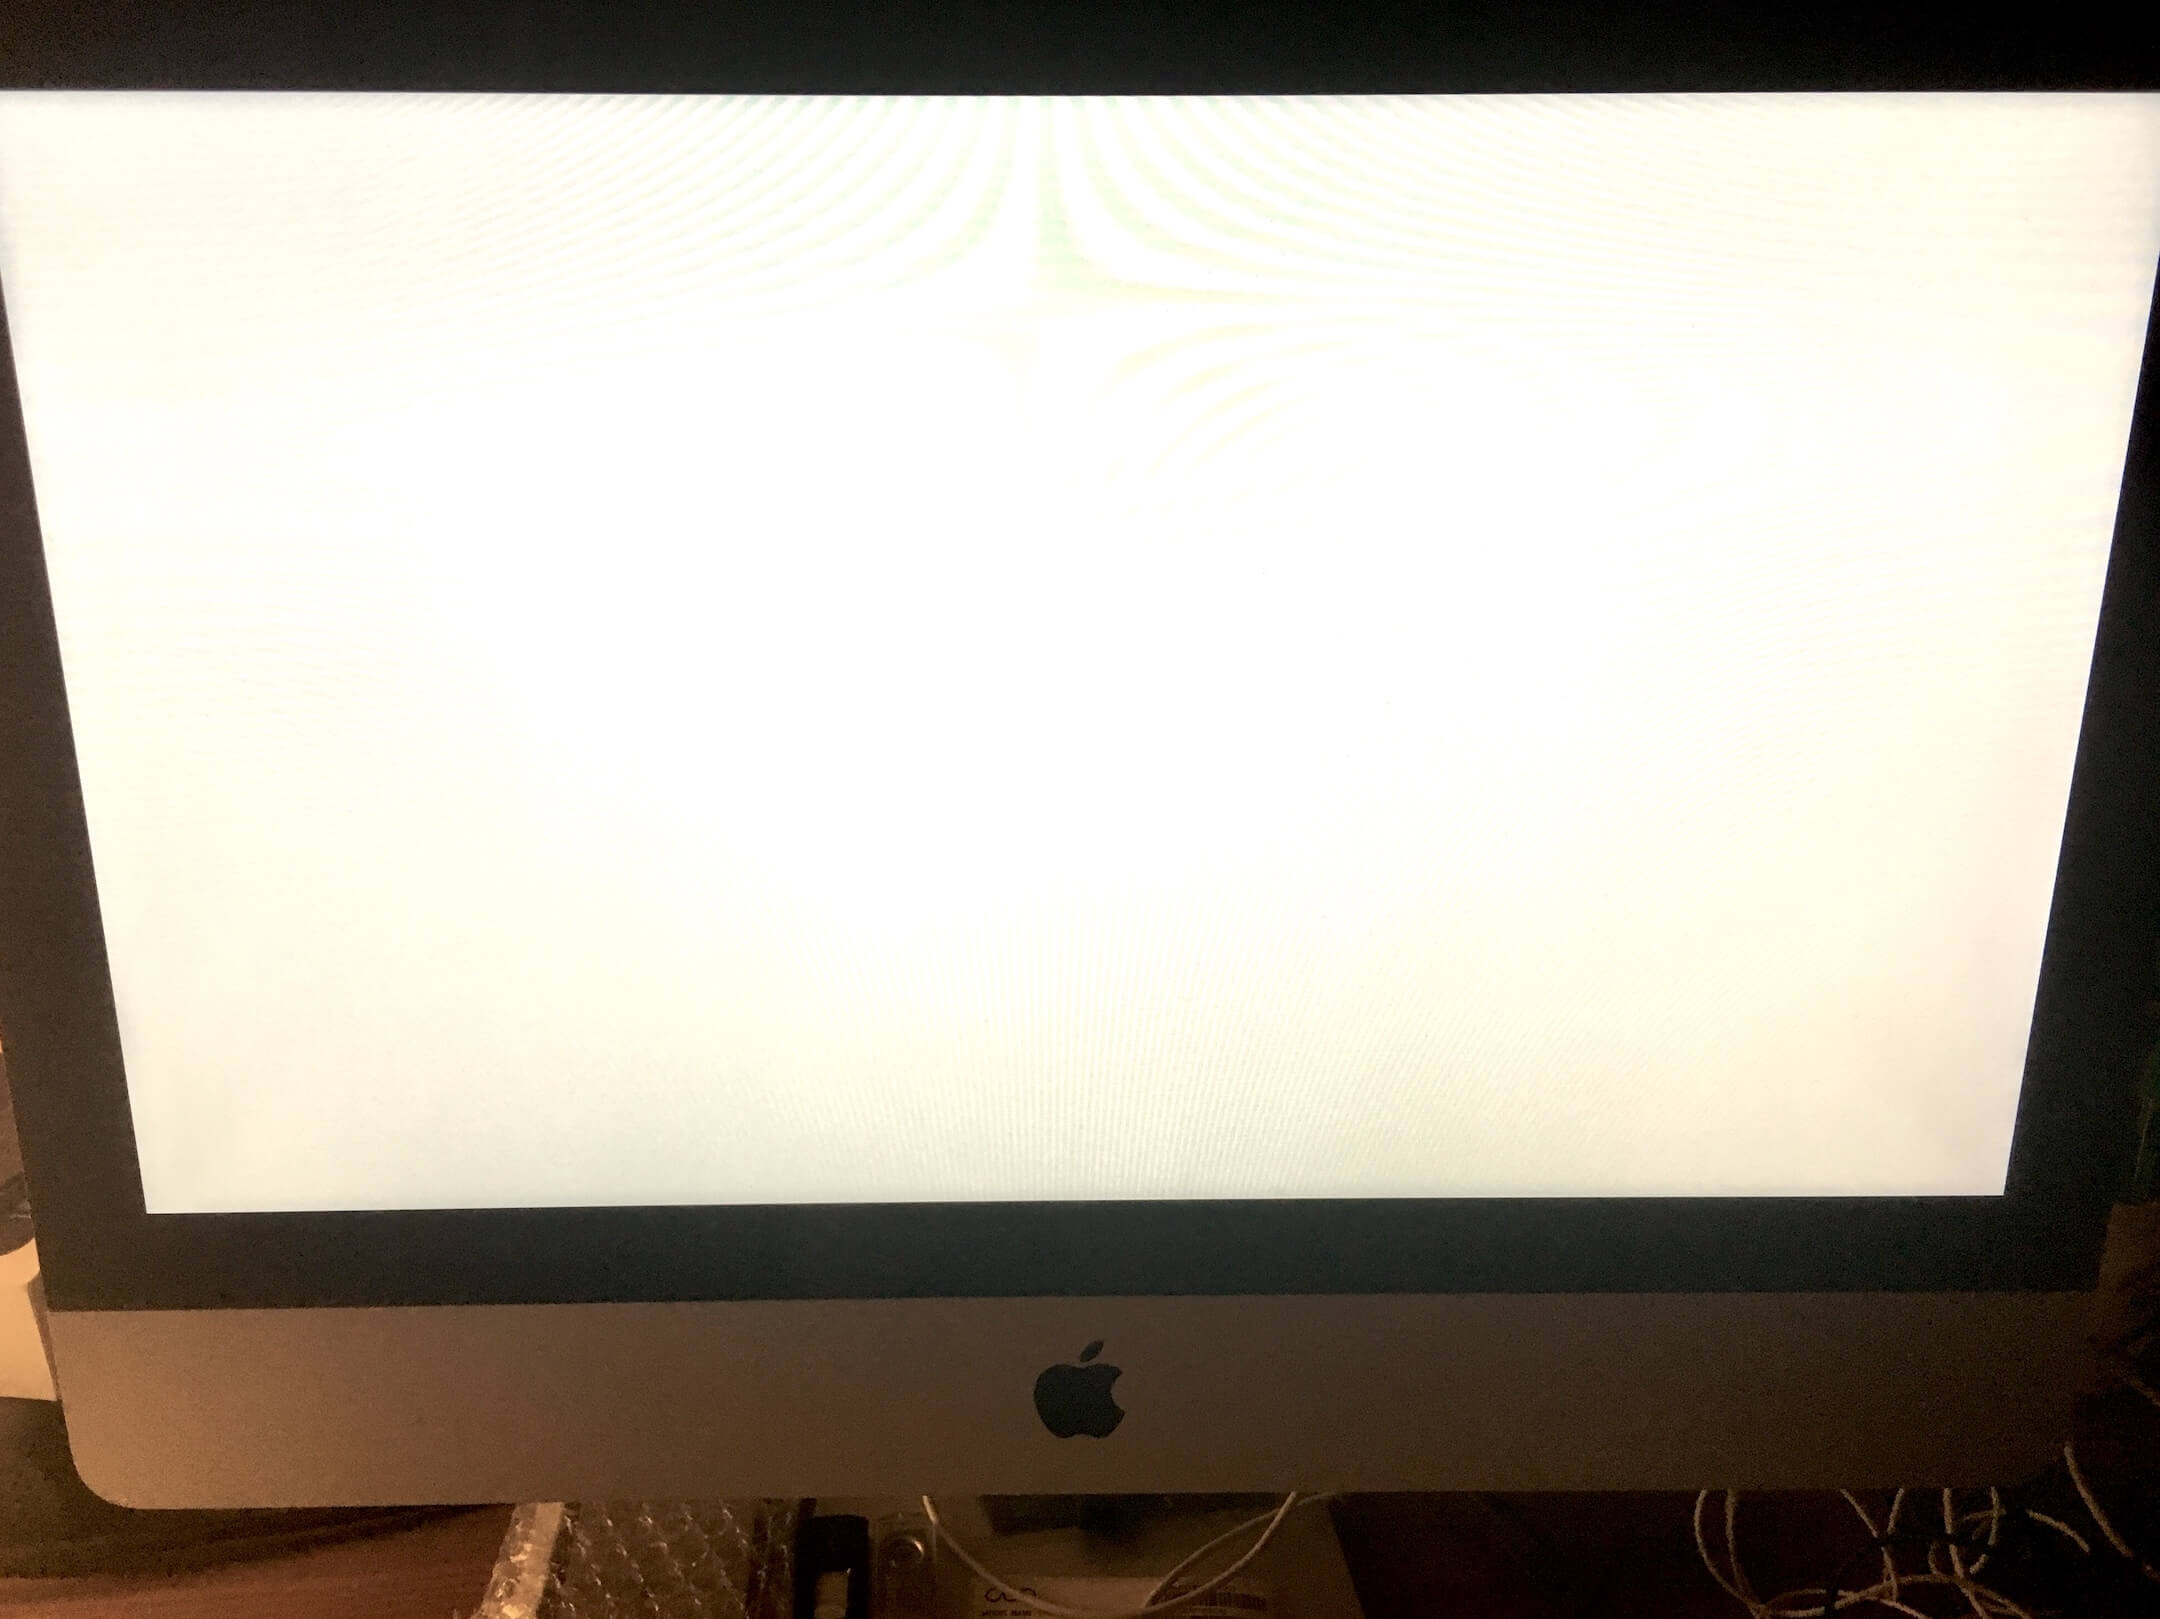 Mac Software Update Stuck Installing 2018